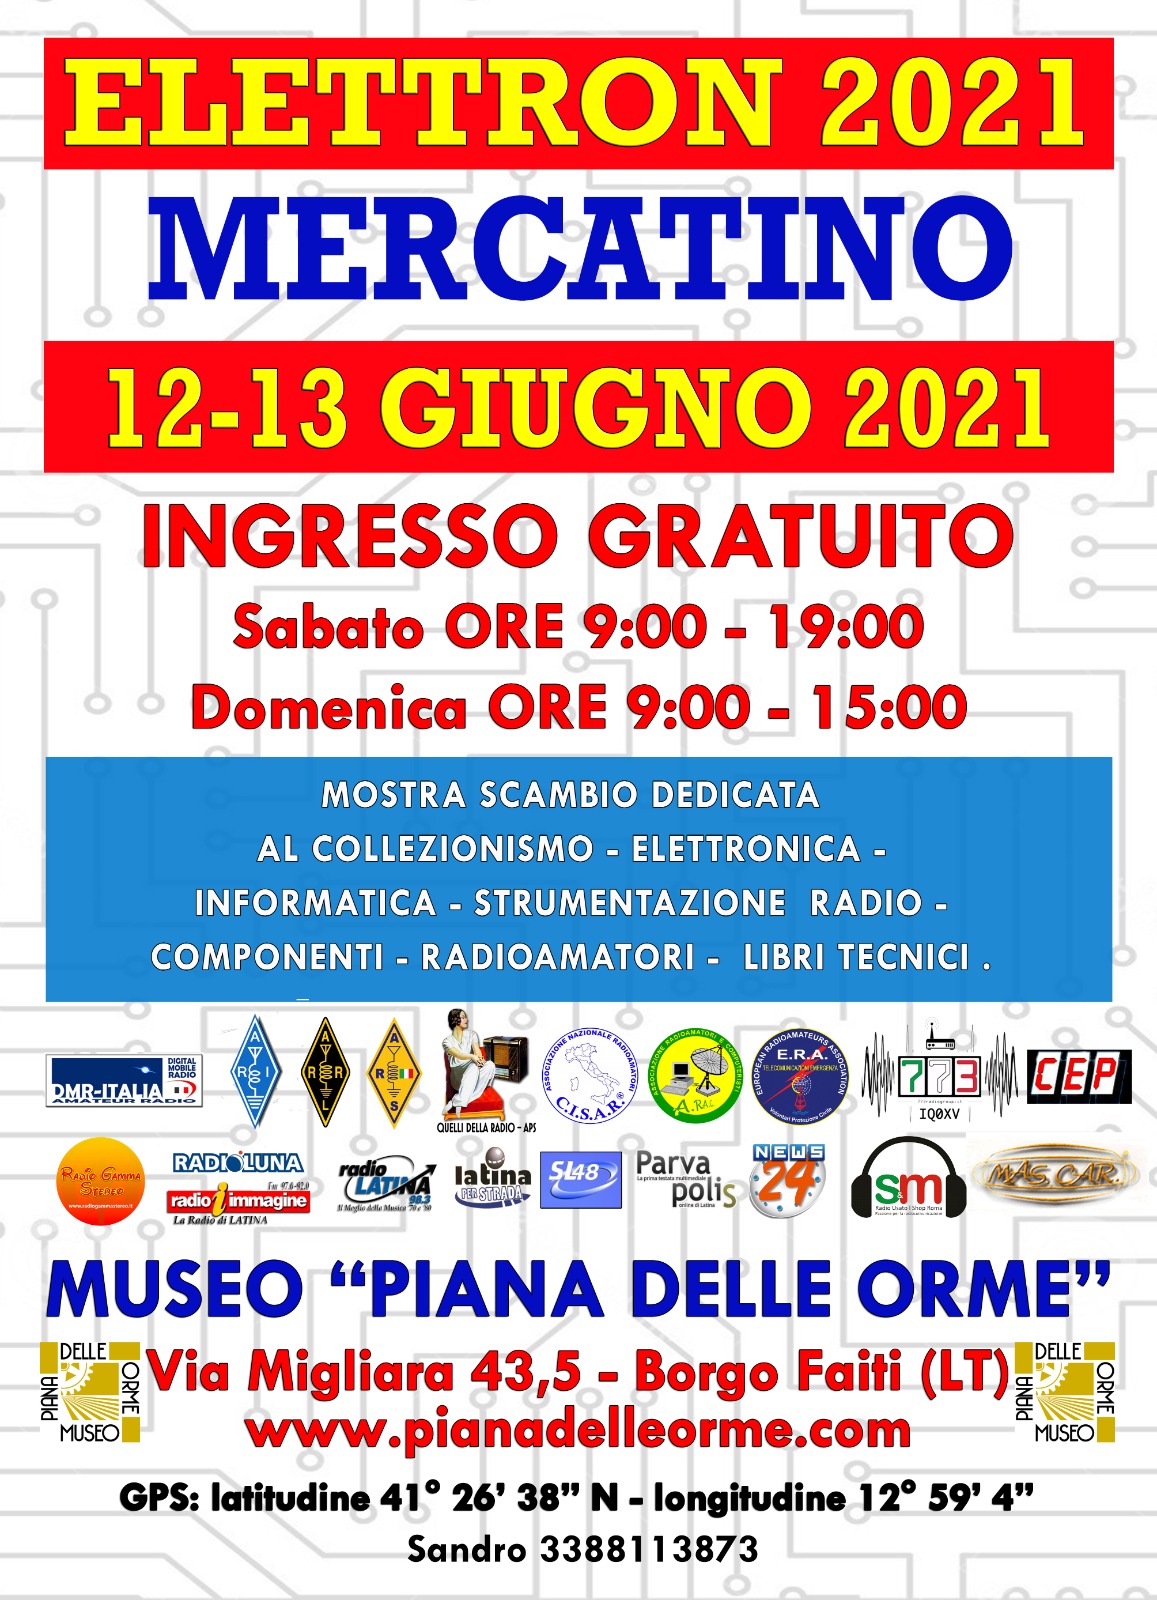 ELETTRON 2021 Mercatino Latina 12-13/6/2021 Elettron-2021-1